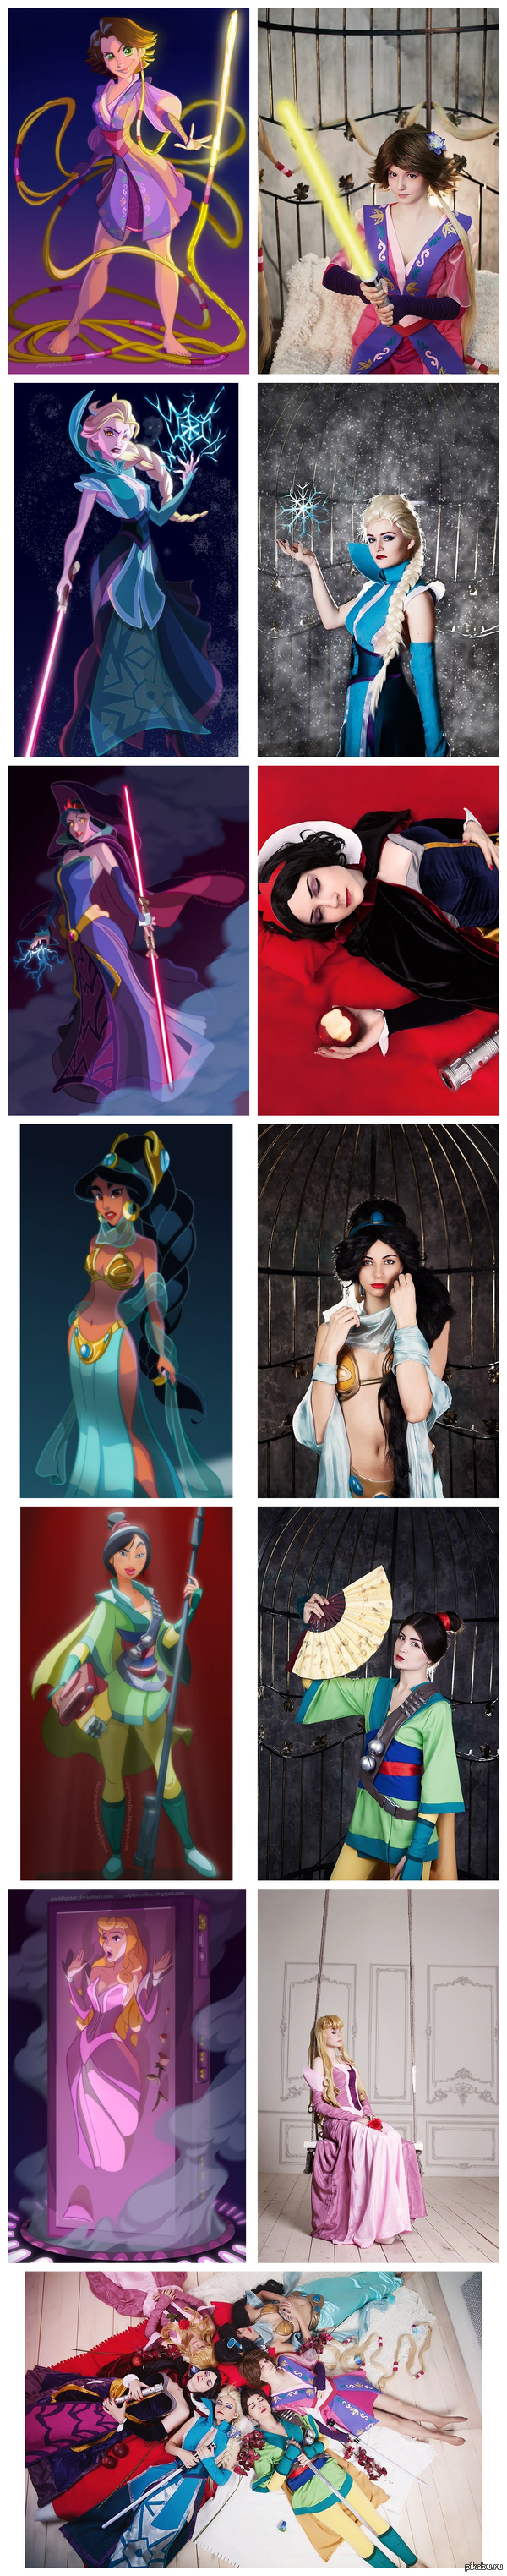 Princess Disney: Star Wars : !!  : Vis Vitalis, Enma Ai, , Blue, , Shadory.  :  .      ;   